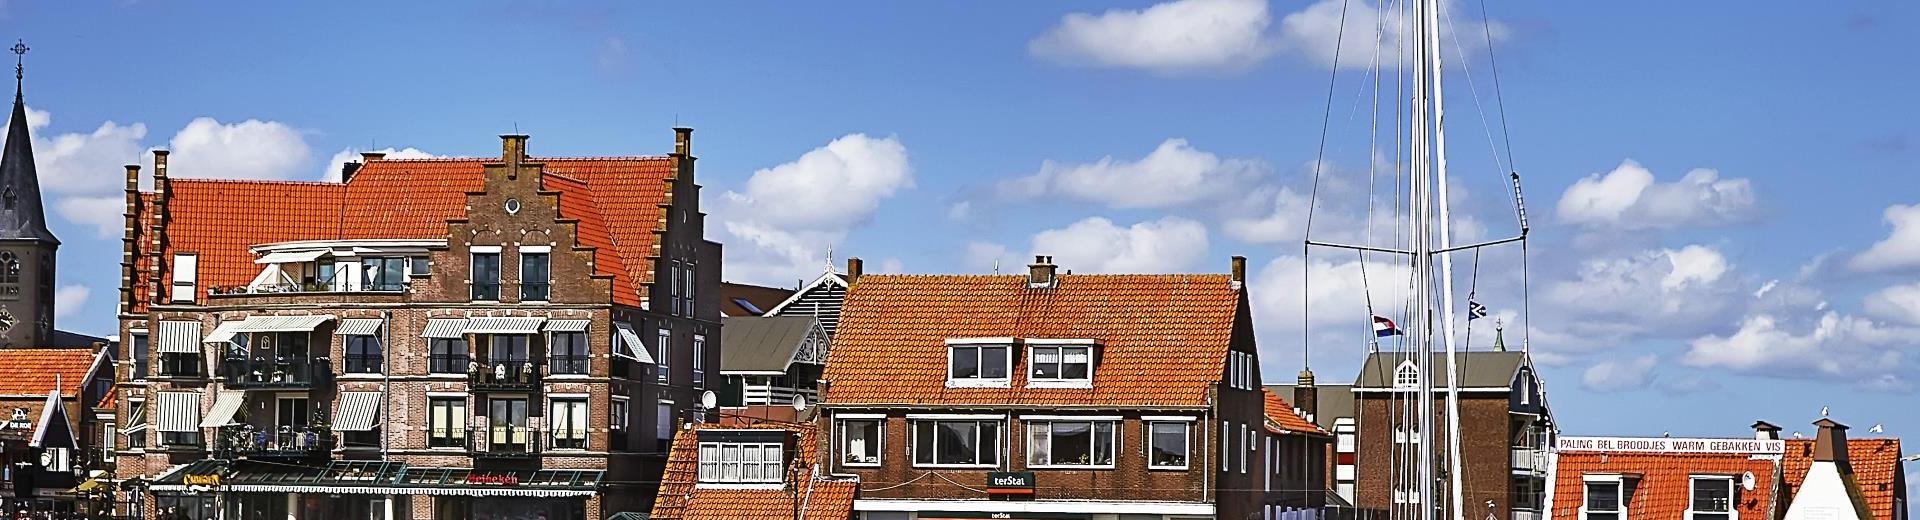 Case vacanze in Frisia – Vacanze nei Paesi Bassi per gli amanti dell'acqua - Casamundo